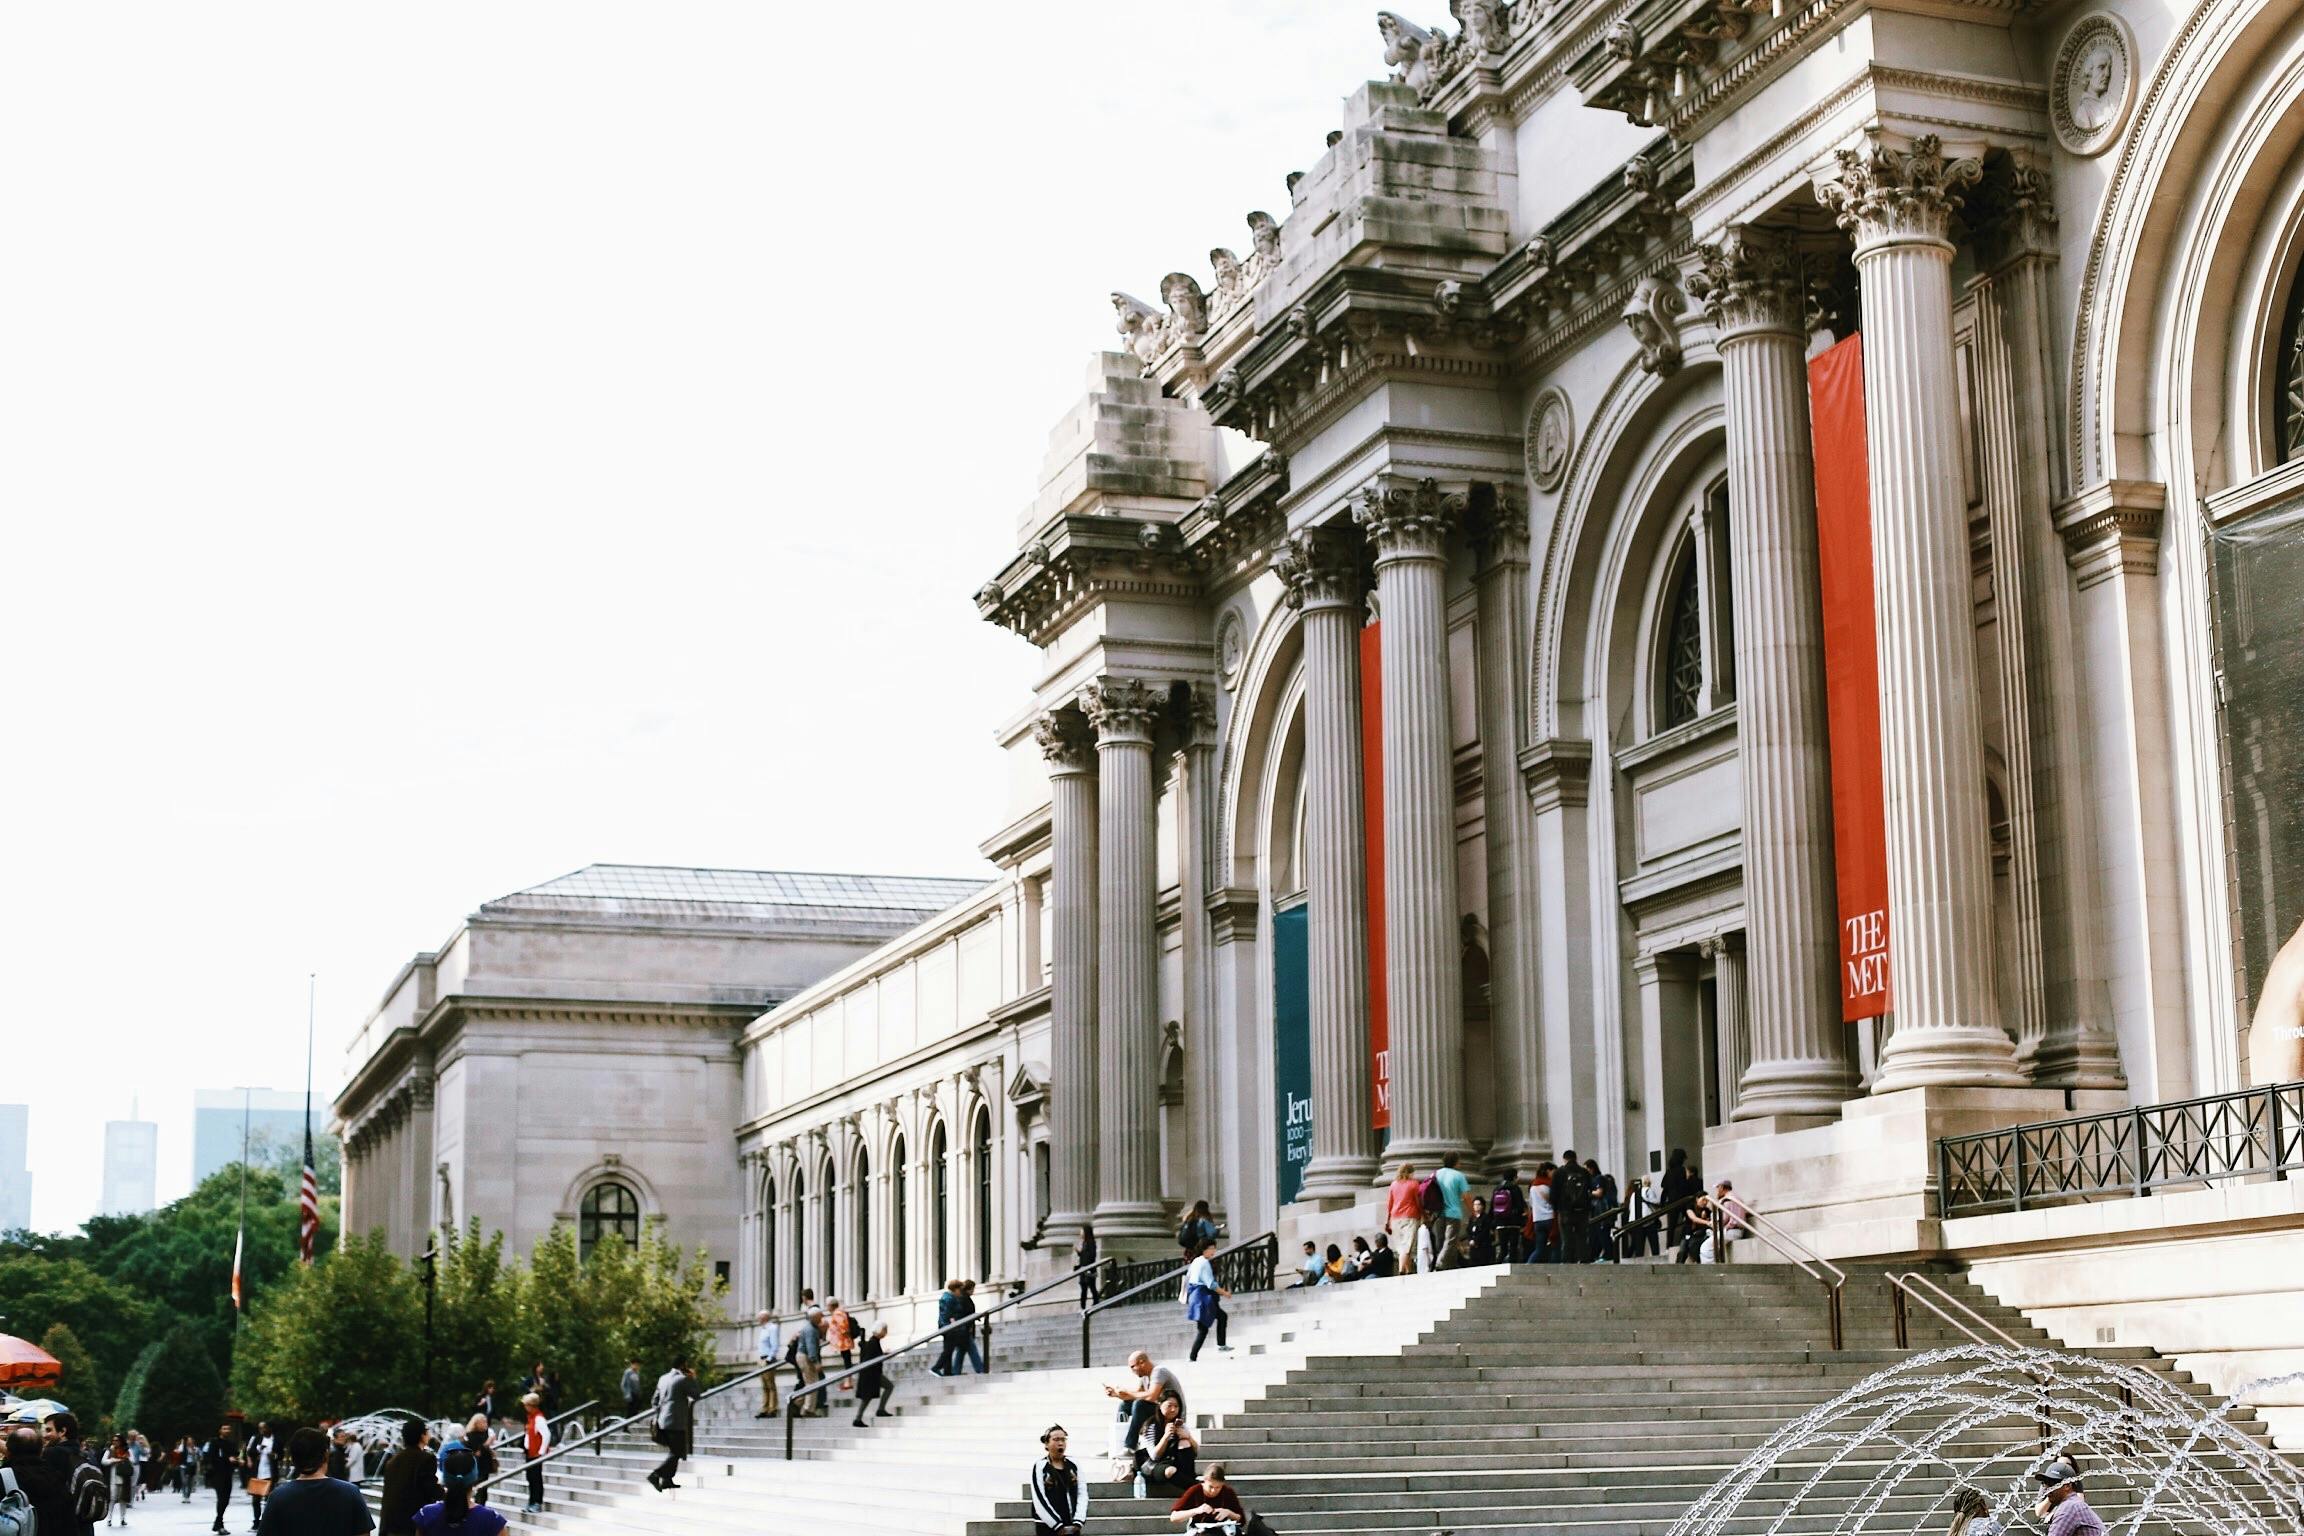 Visite guidée privée ou semi-privée : le Metropolitan Museum of Art avec billets coupe-file